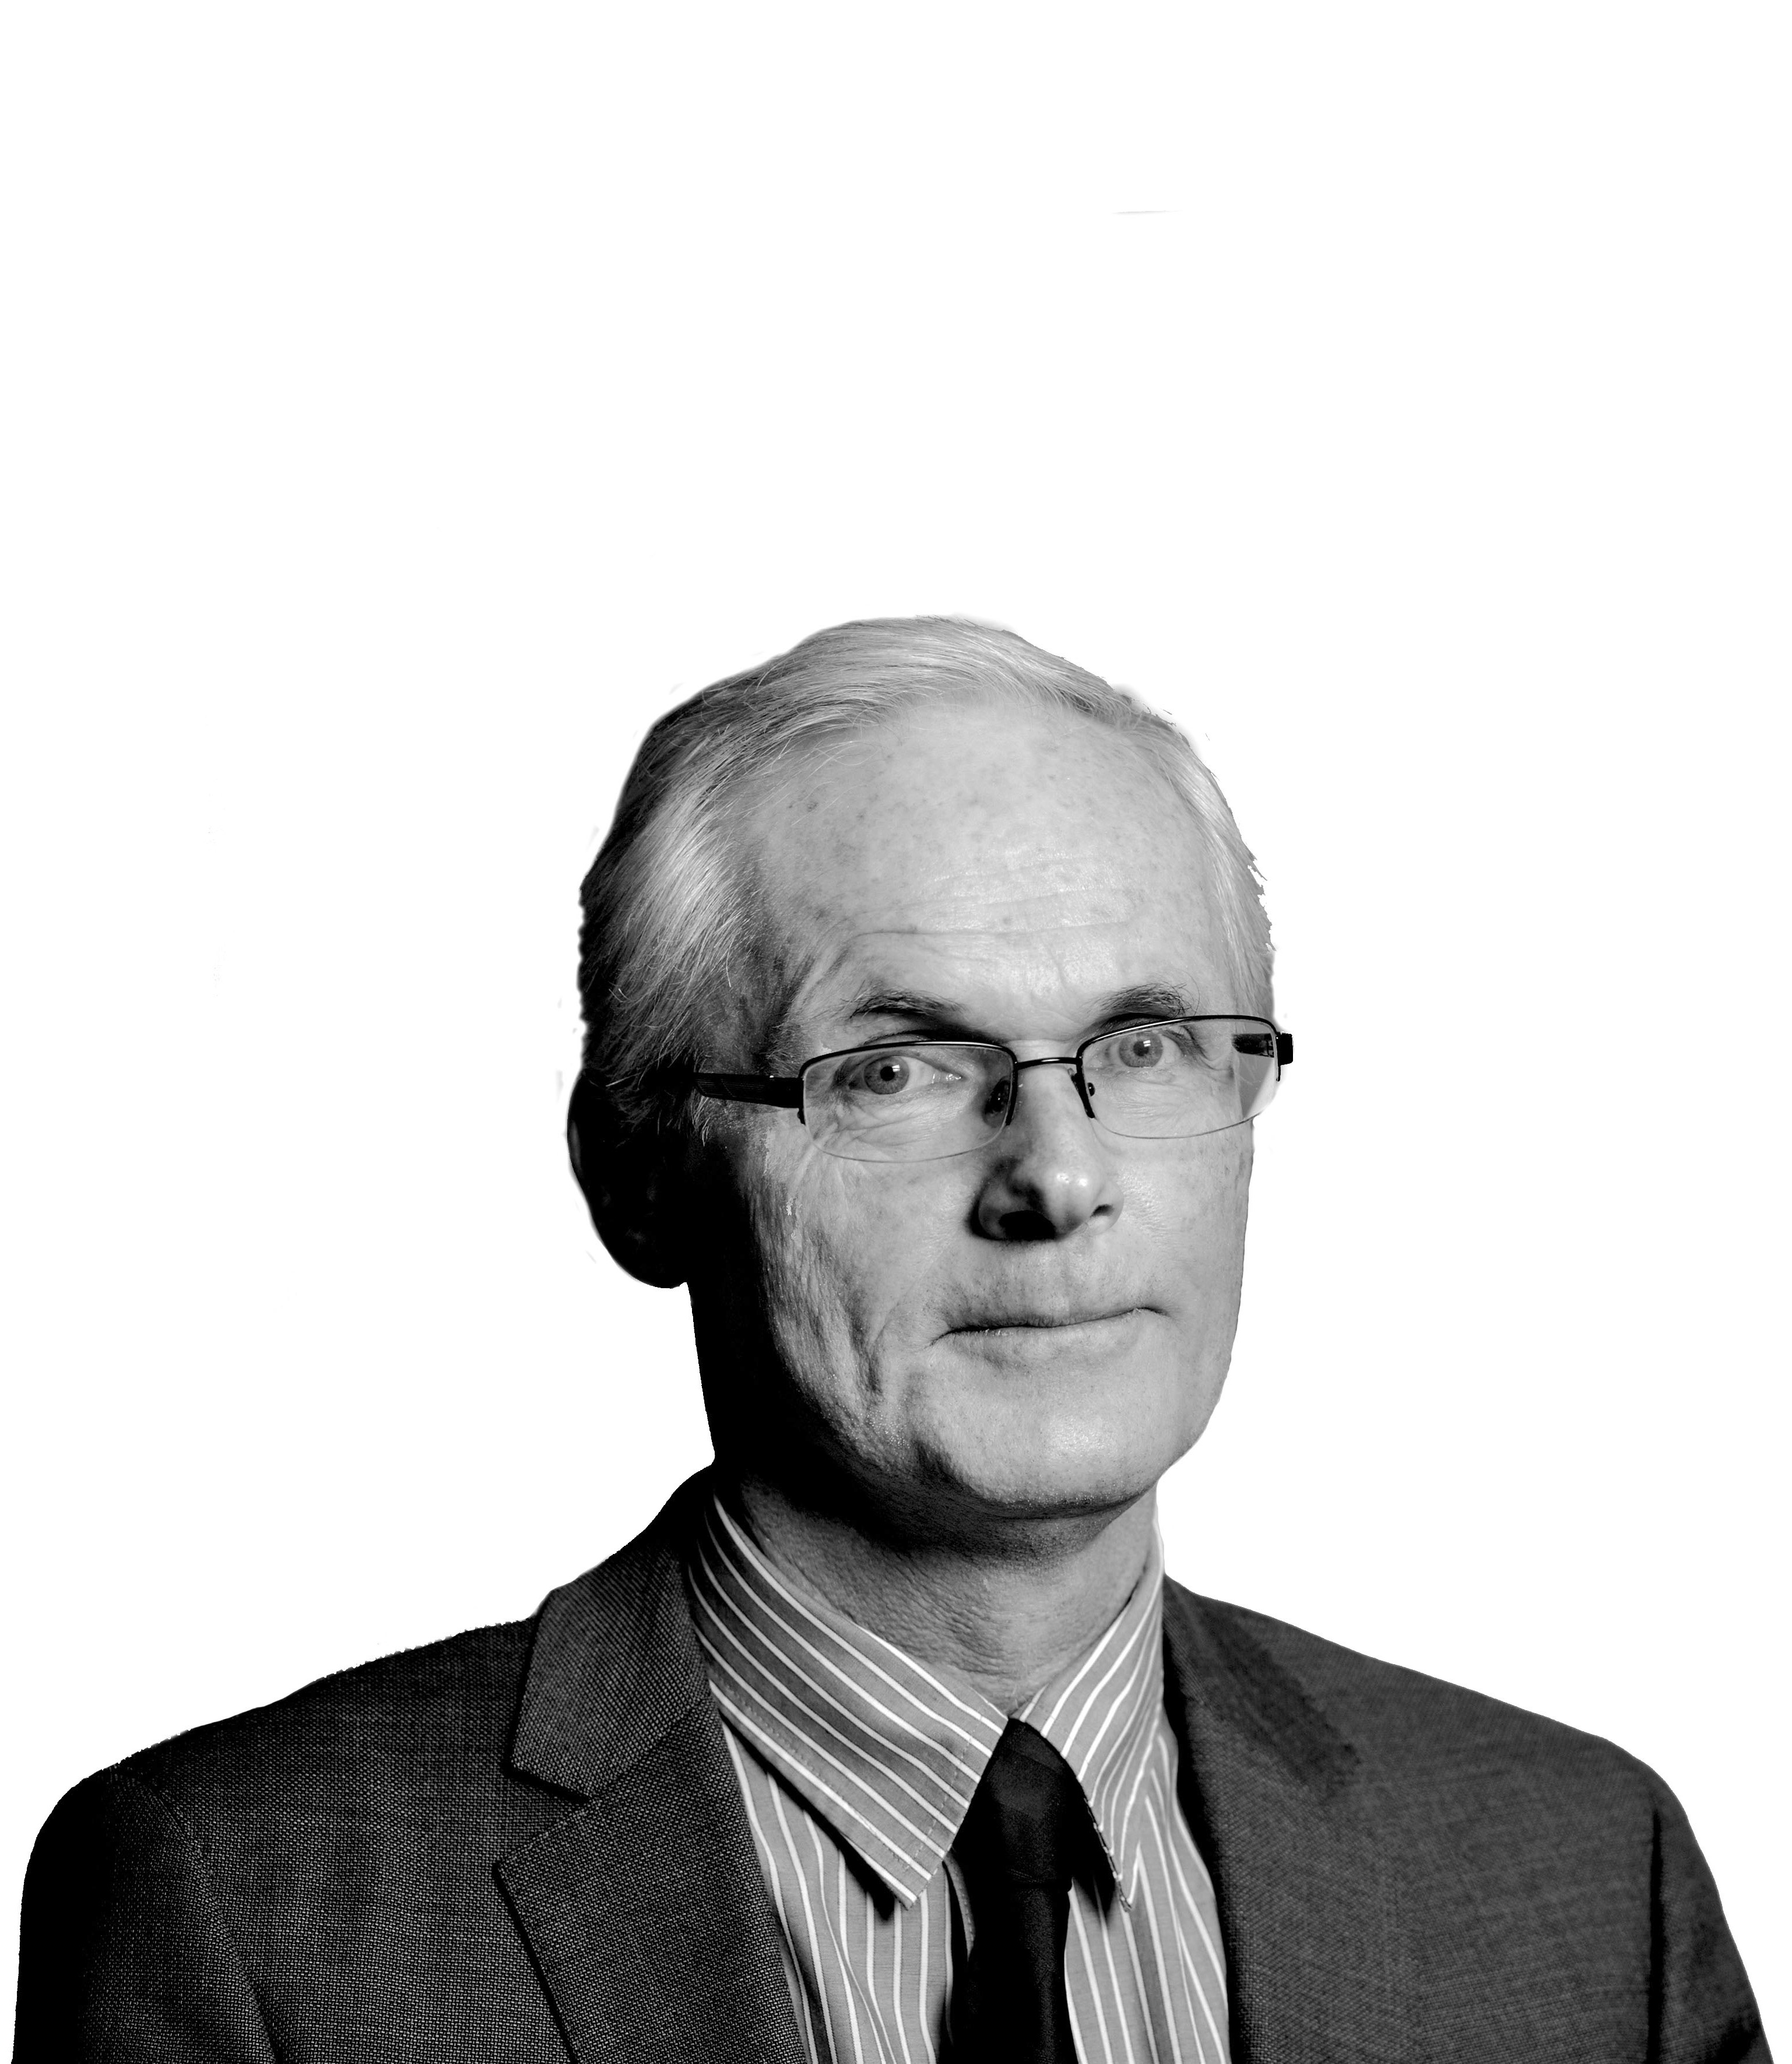 Lars Sørgard